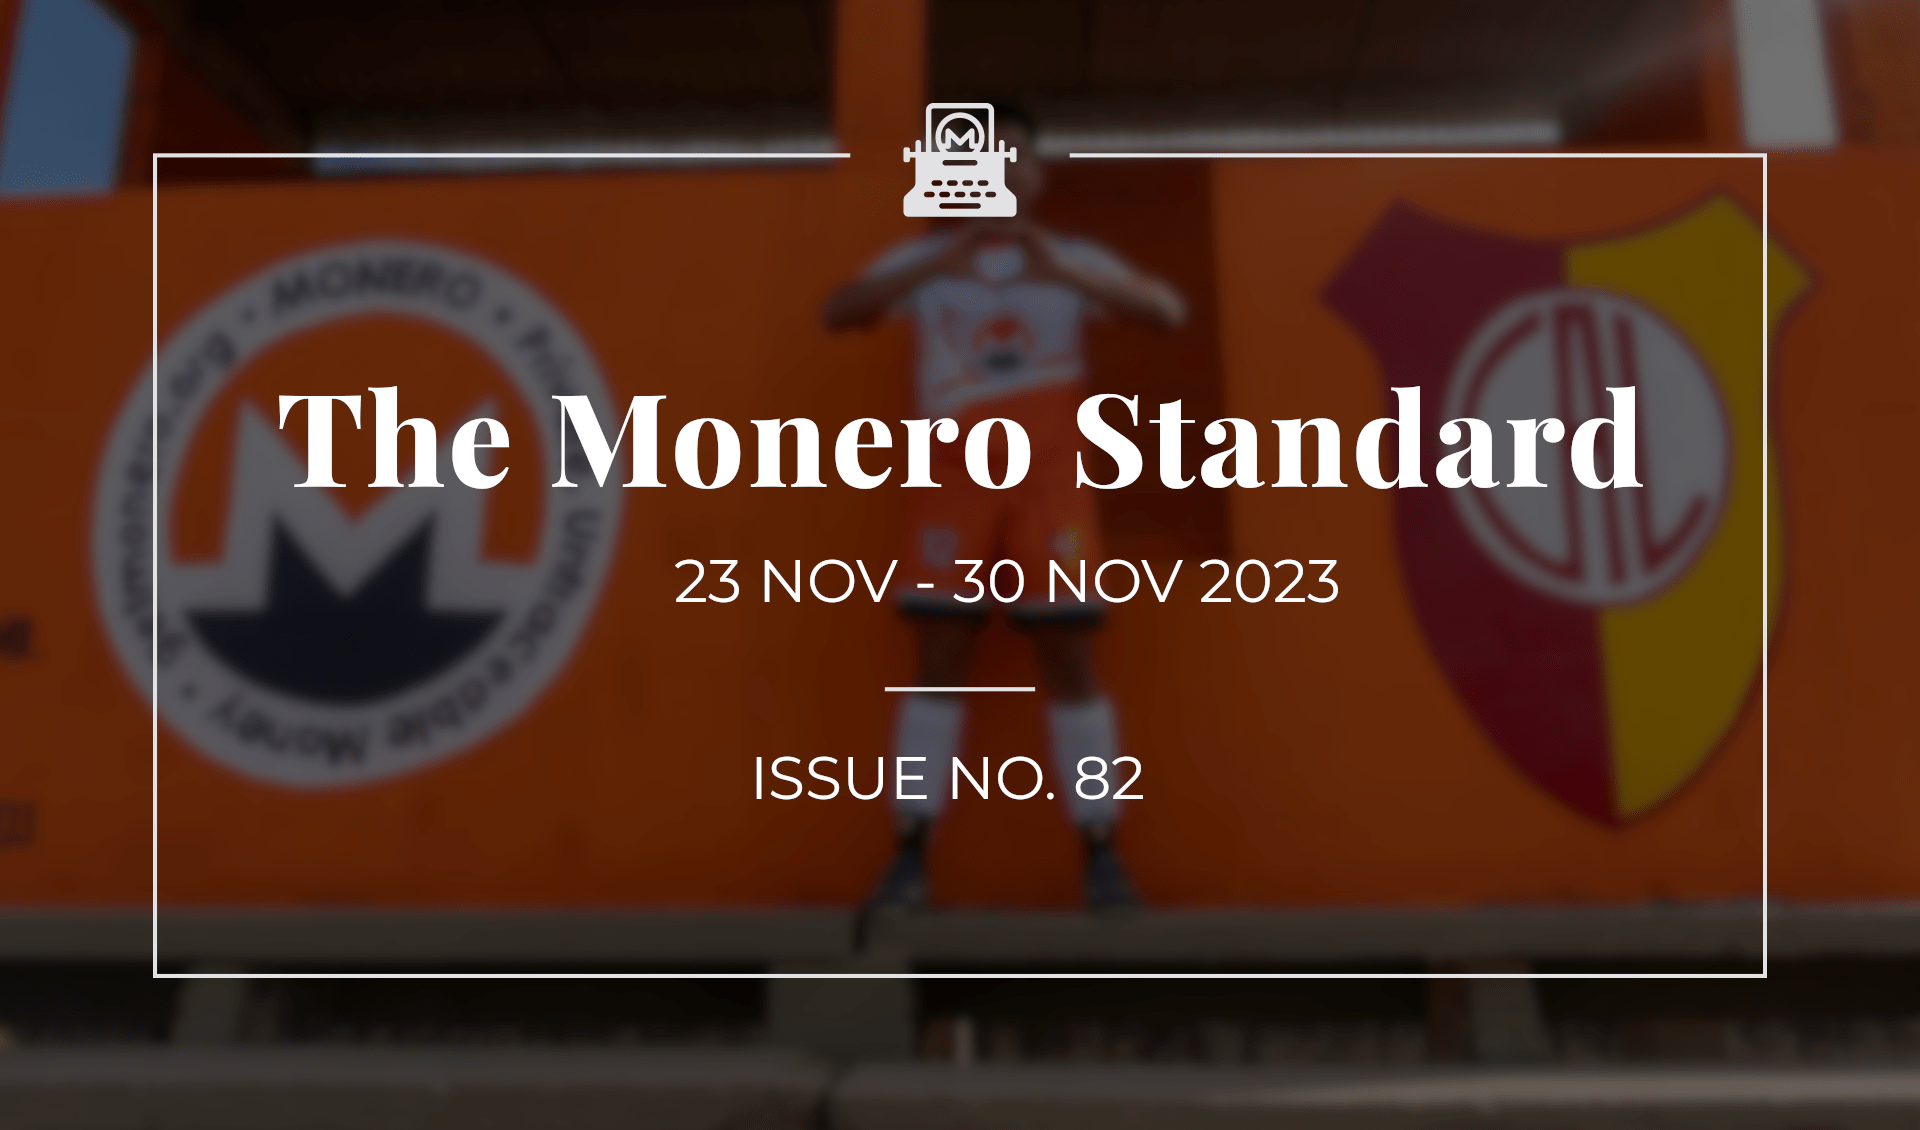 The Monero Standard #82: 23 Nov 2023 - 30 Nov 2023